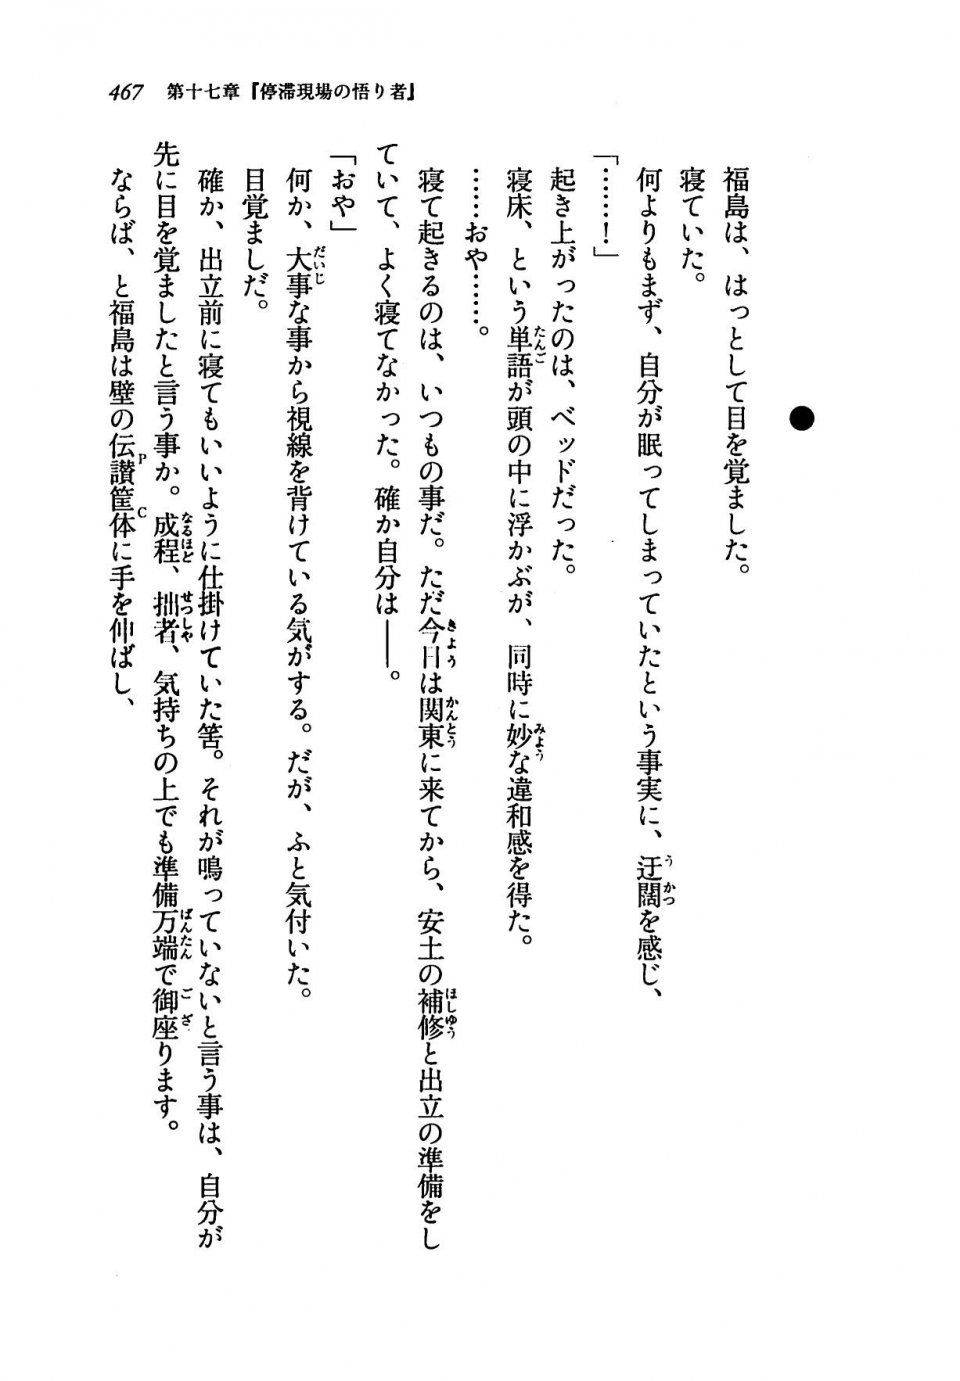 Kyoukai Senjou no Horizon LN Vol 19(8A) - Photo #467